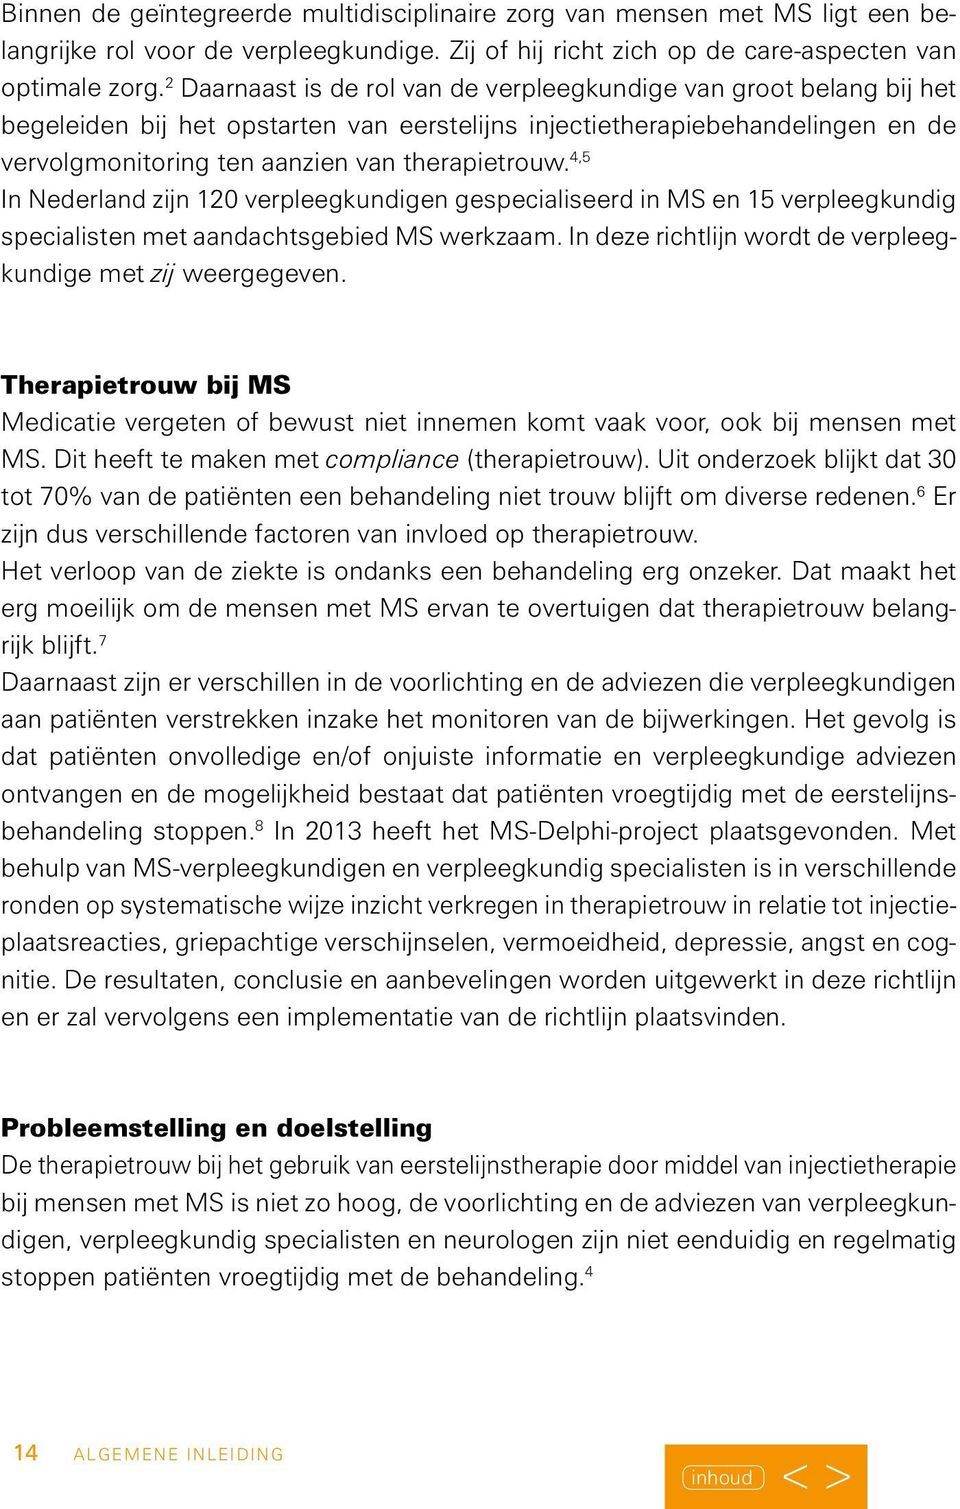 4,5 In Nederland zijn 120 verpleegkundigen gespecialiseerd in MS en 15 verpleegkundig specialisten met aandachtsgebied MS werkzaam. In deze richtlijn wordt de verpleegkundige met zij weergegeven.